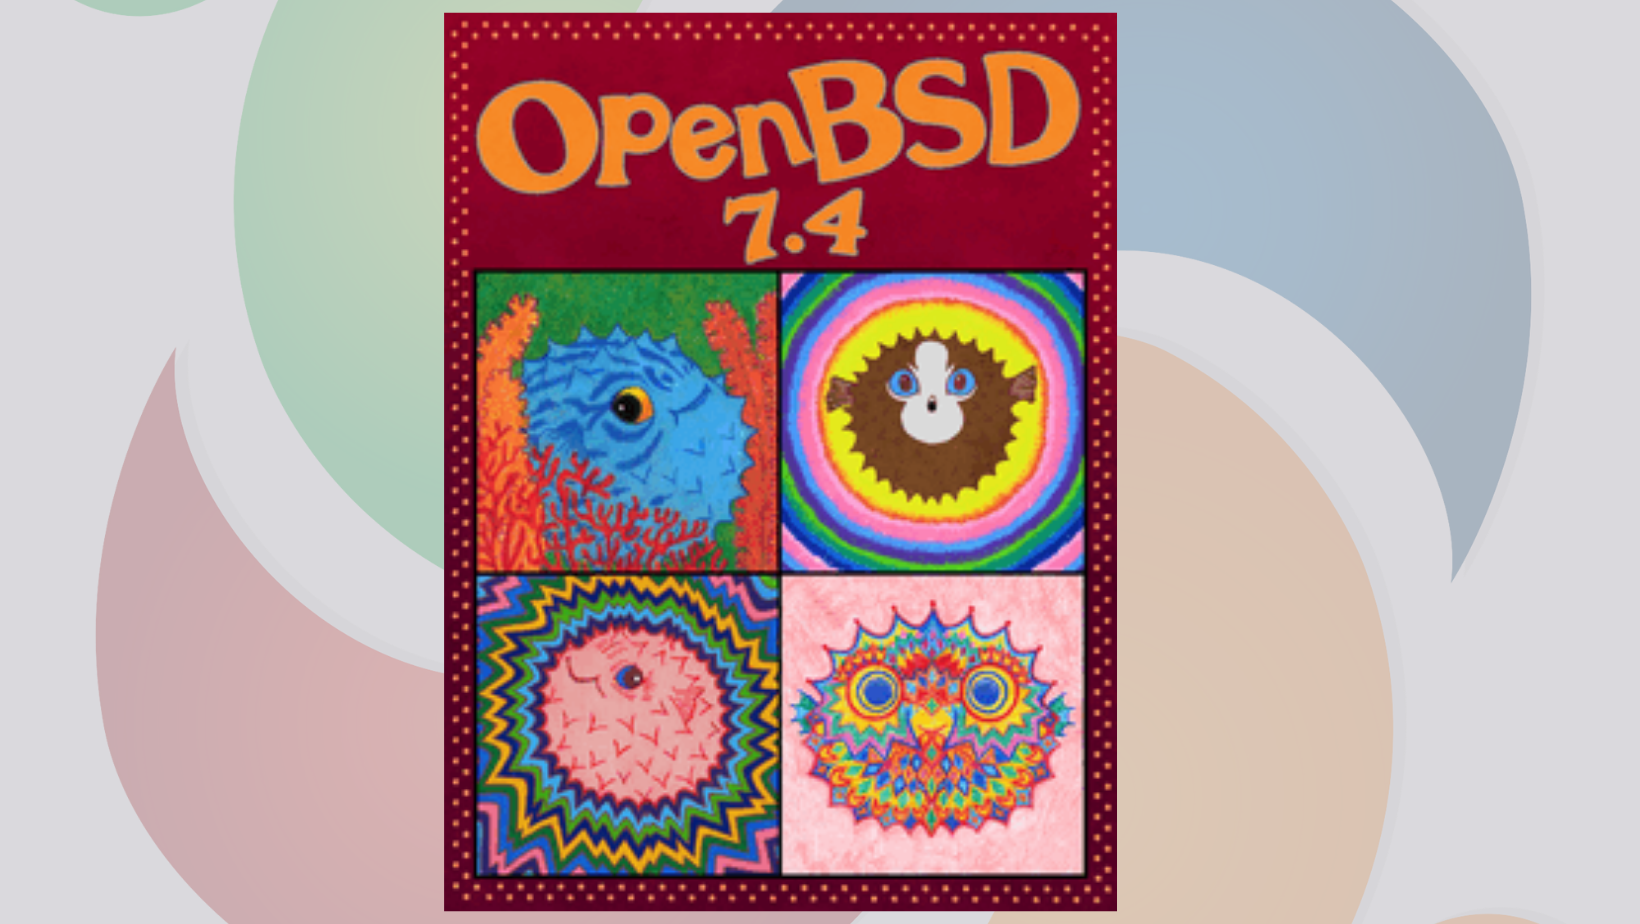 OpenBSD 7.4 lançado com novo suporte de hardware e melhorias de segurança